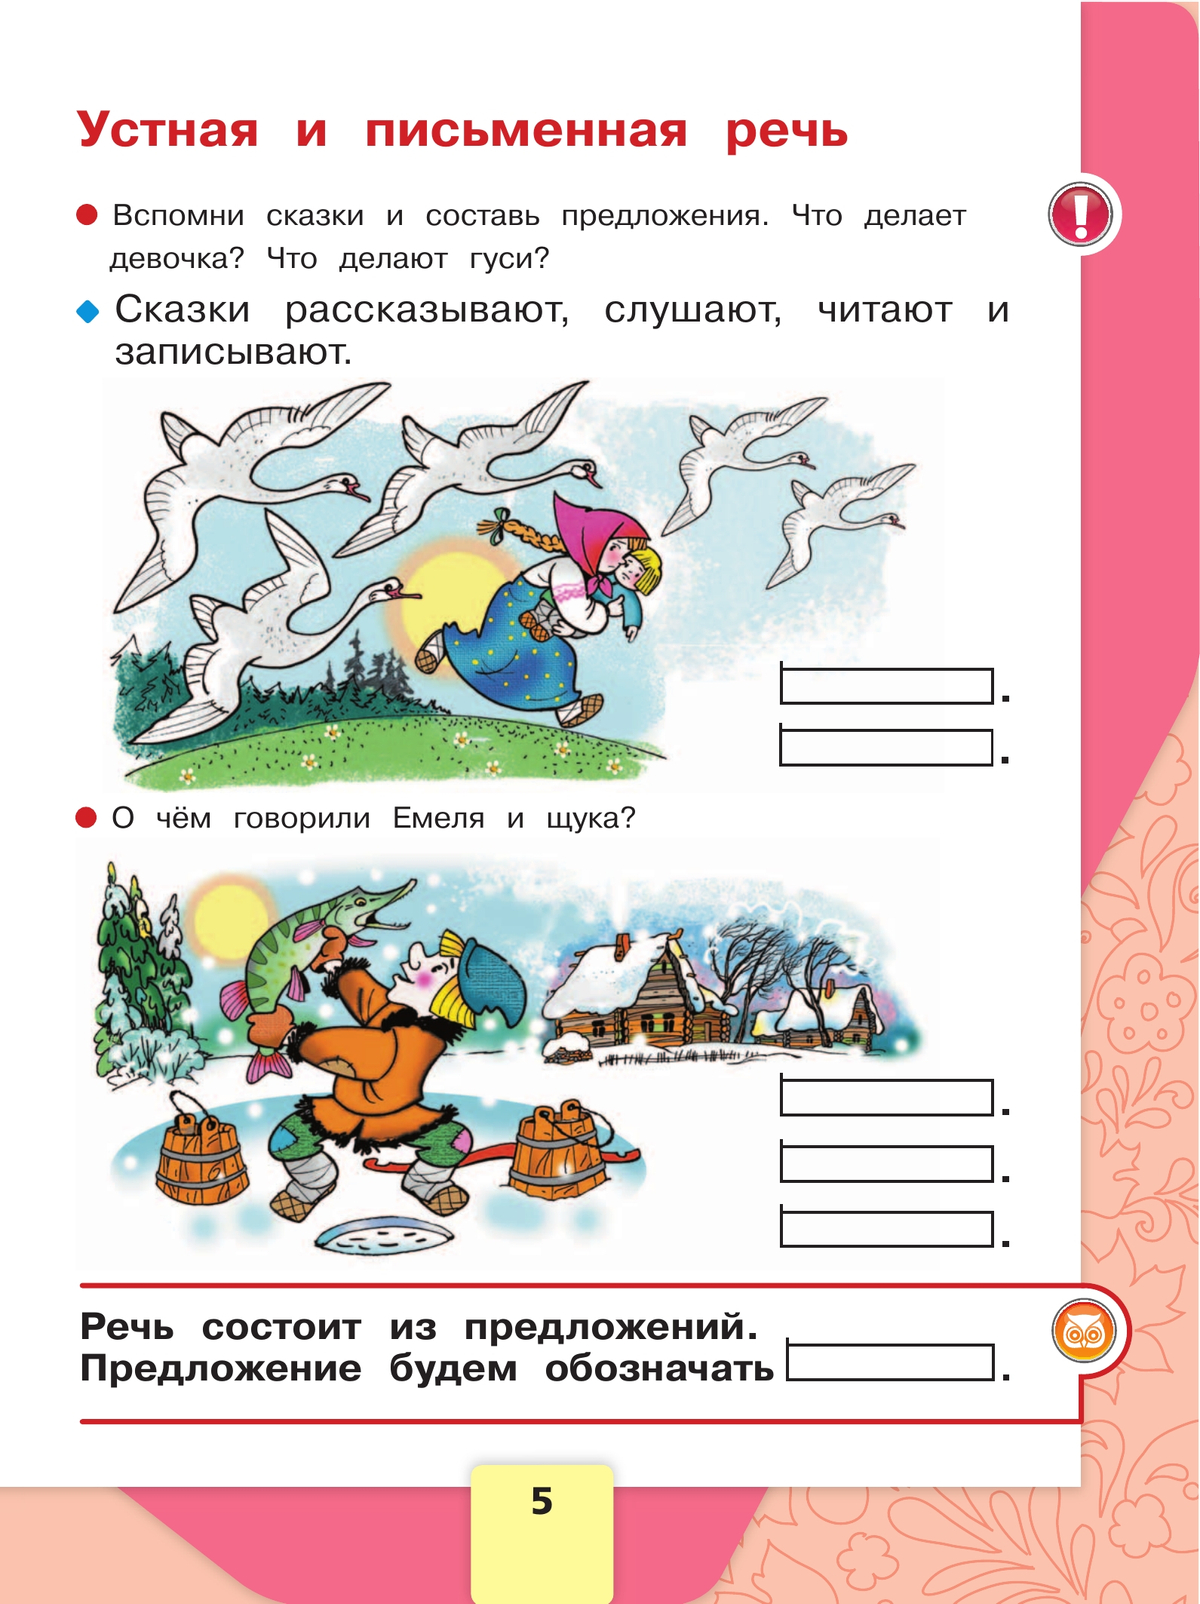 Русский язык. Азбука. 1 класс. Учебник. В 2 ч. Часть 1 7